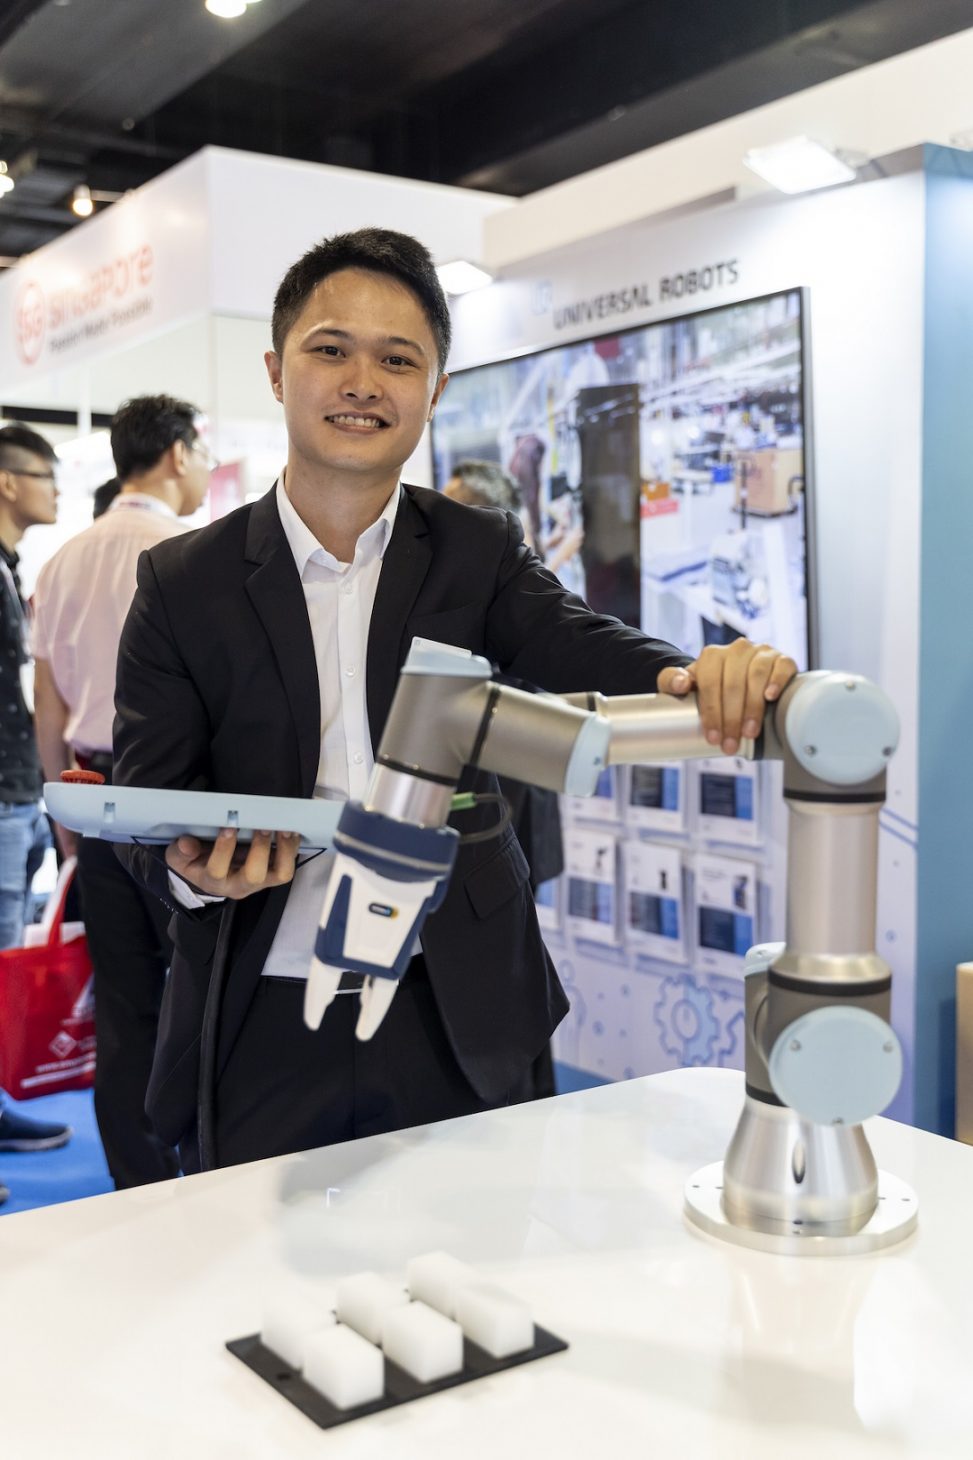 Trực tiếp quan sát cách robot cộng tác bốc xếp hàng hóa tại triển lãm Propak Việt Nam 2022 - Nguyen Tuan Anh Vietnam Country Manager UR3